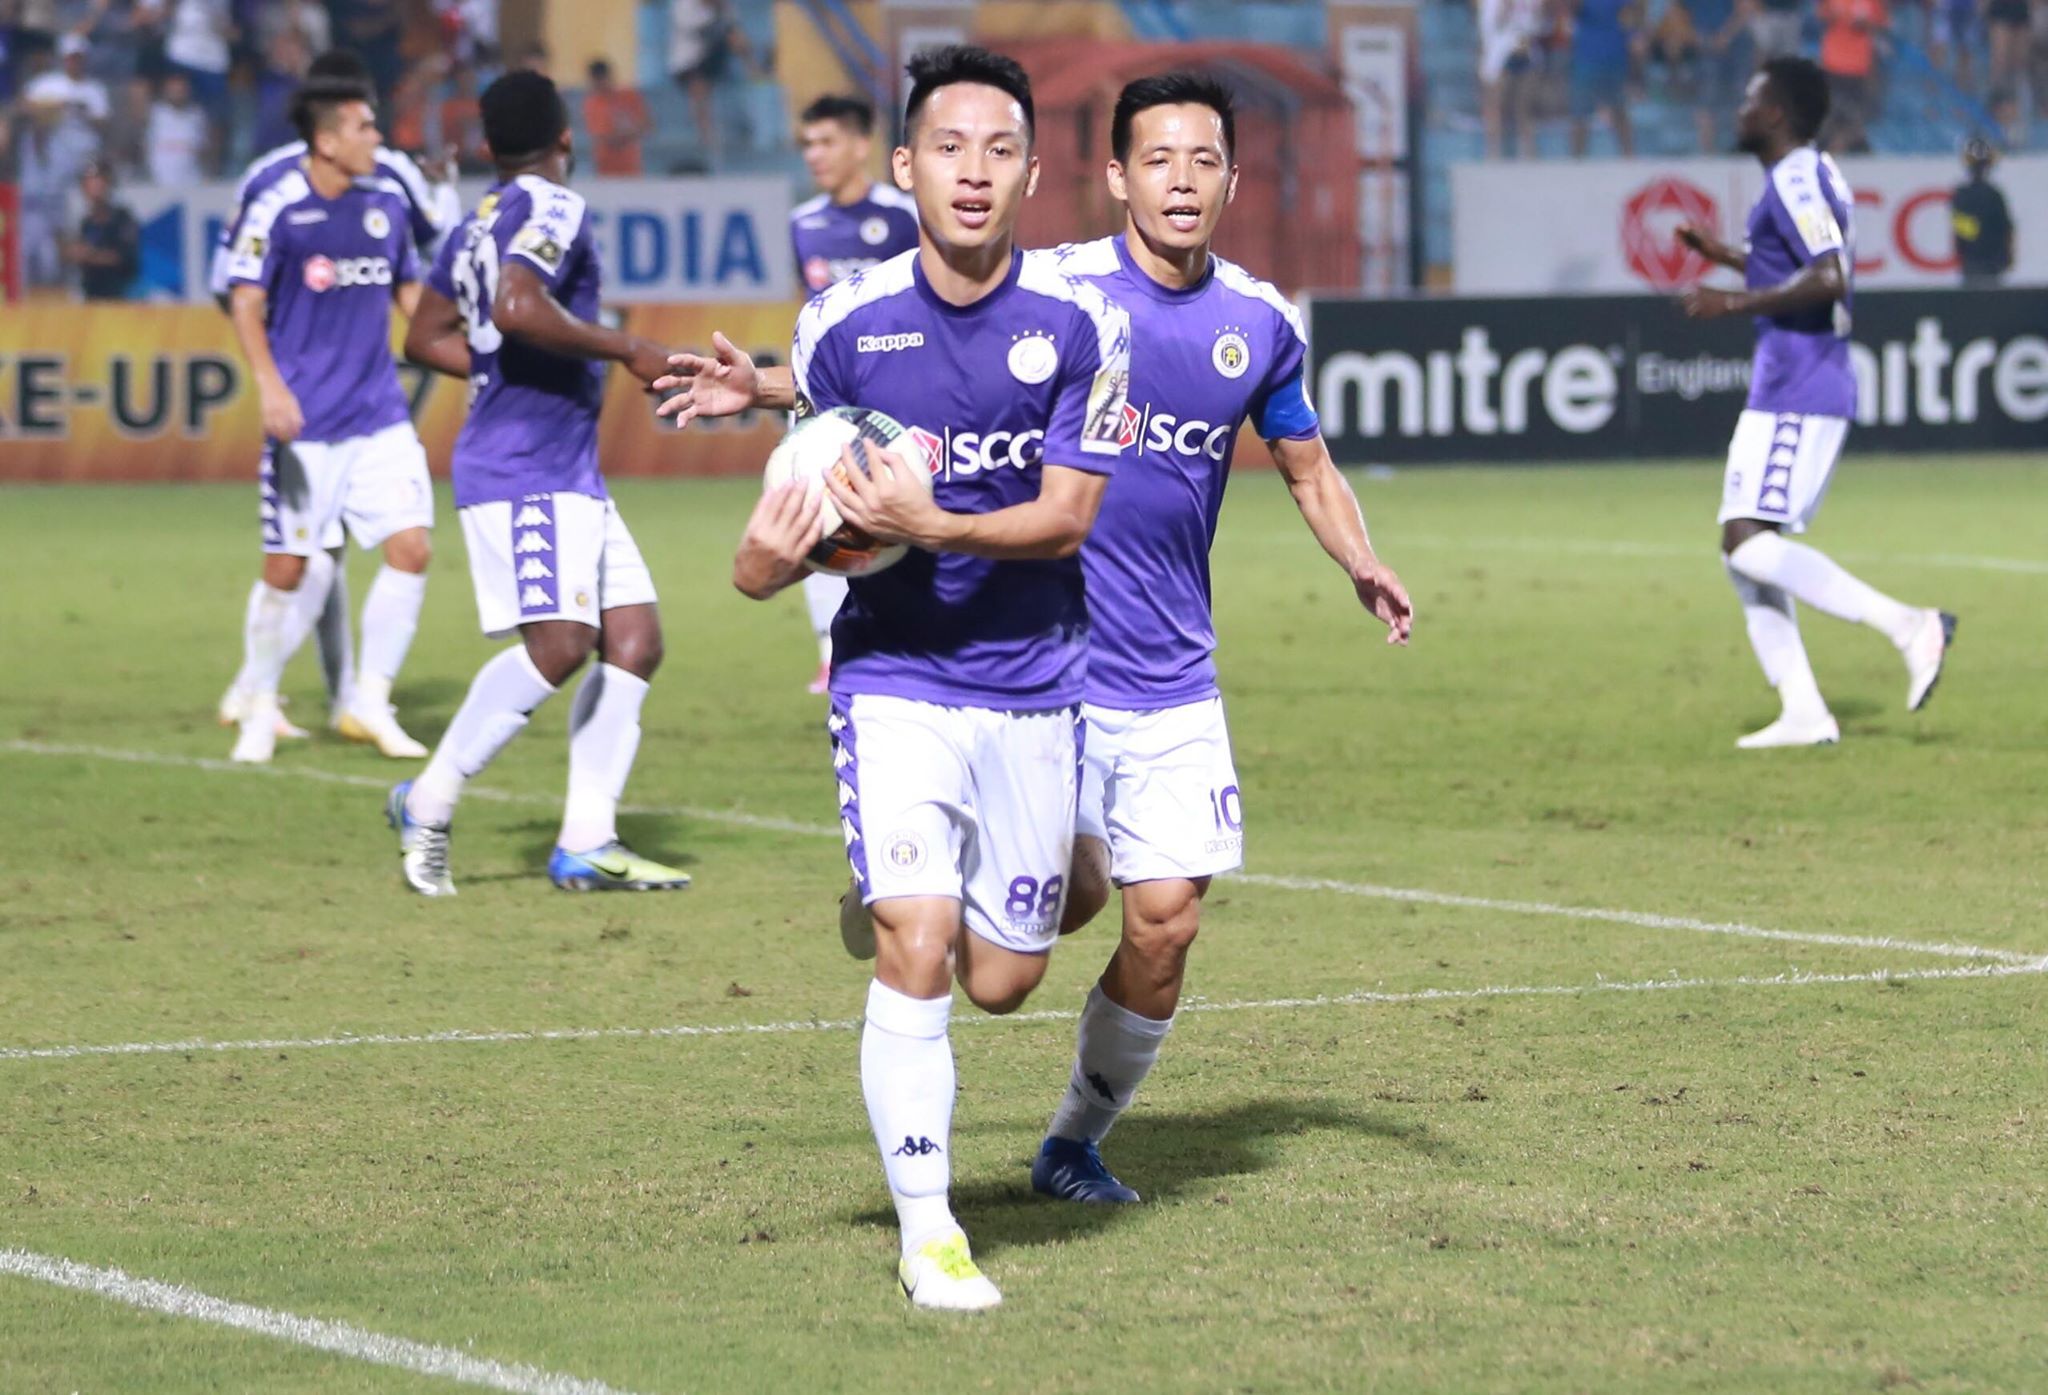 Hà Nội vs Sài Gòn, vòng 13 v-league 2019, hà nội 2-0 sài gòn, quang hải chấn thương, quang hải dự bị